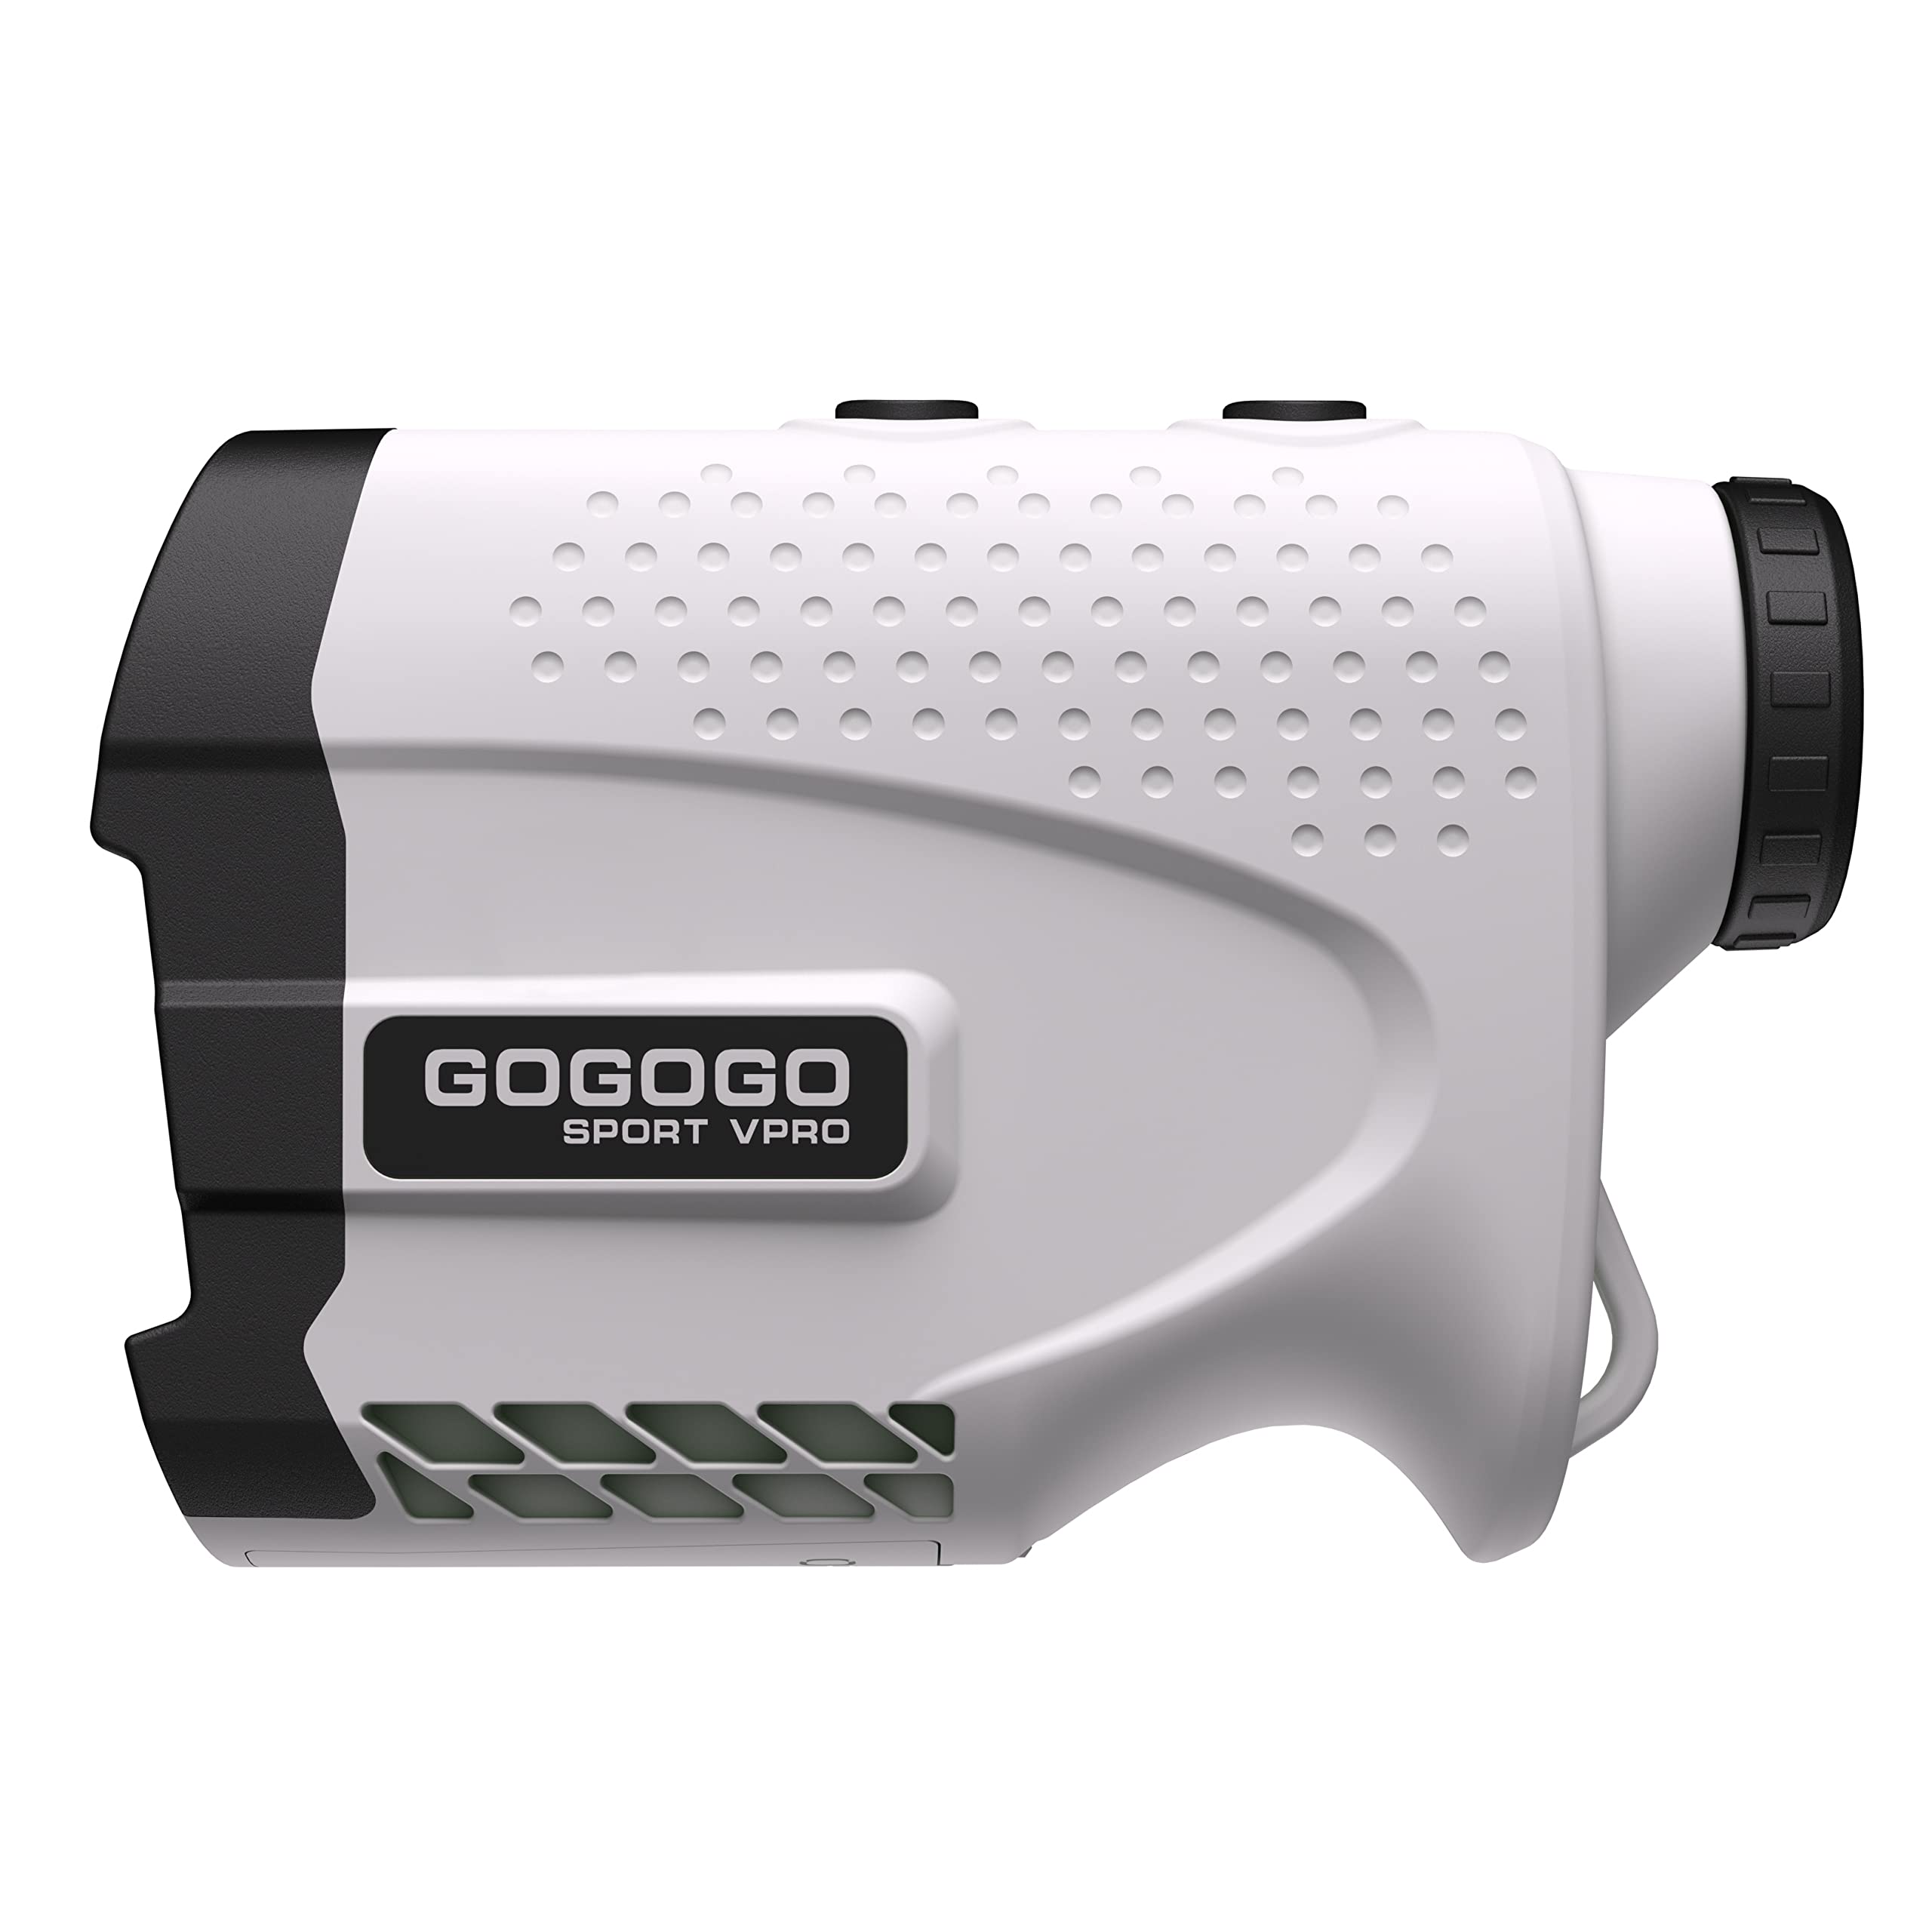 Gogogo Sport Vpro Telêmetro a laser para golfe e caça Telêmetro Medição de distância com alta precisão Bloqueio de mastro de bandeira Função de vibração Modo de declive Varredura contínua